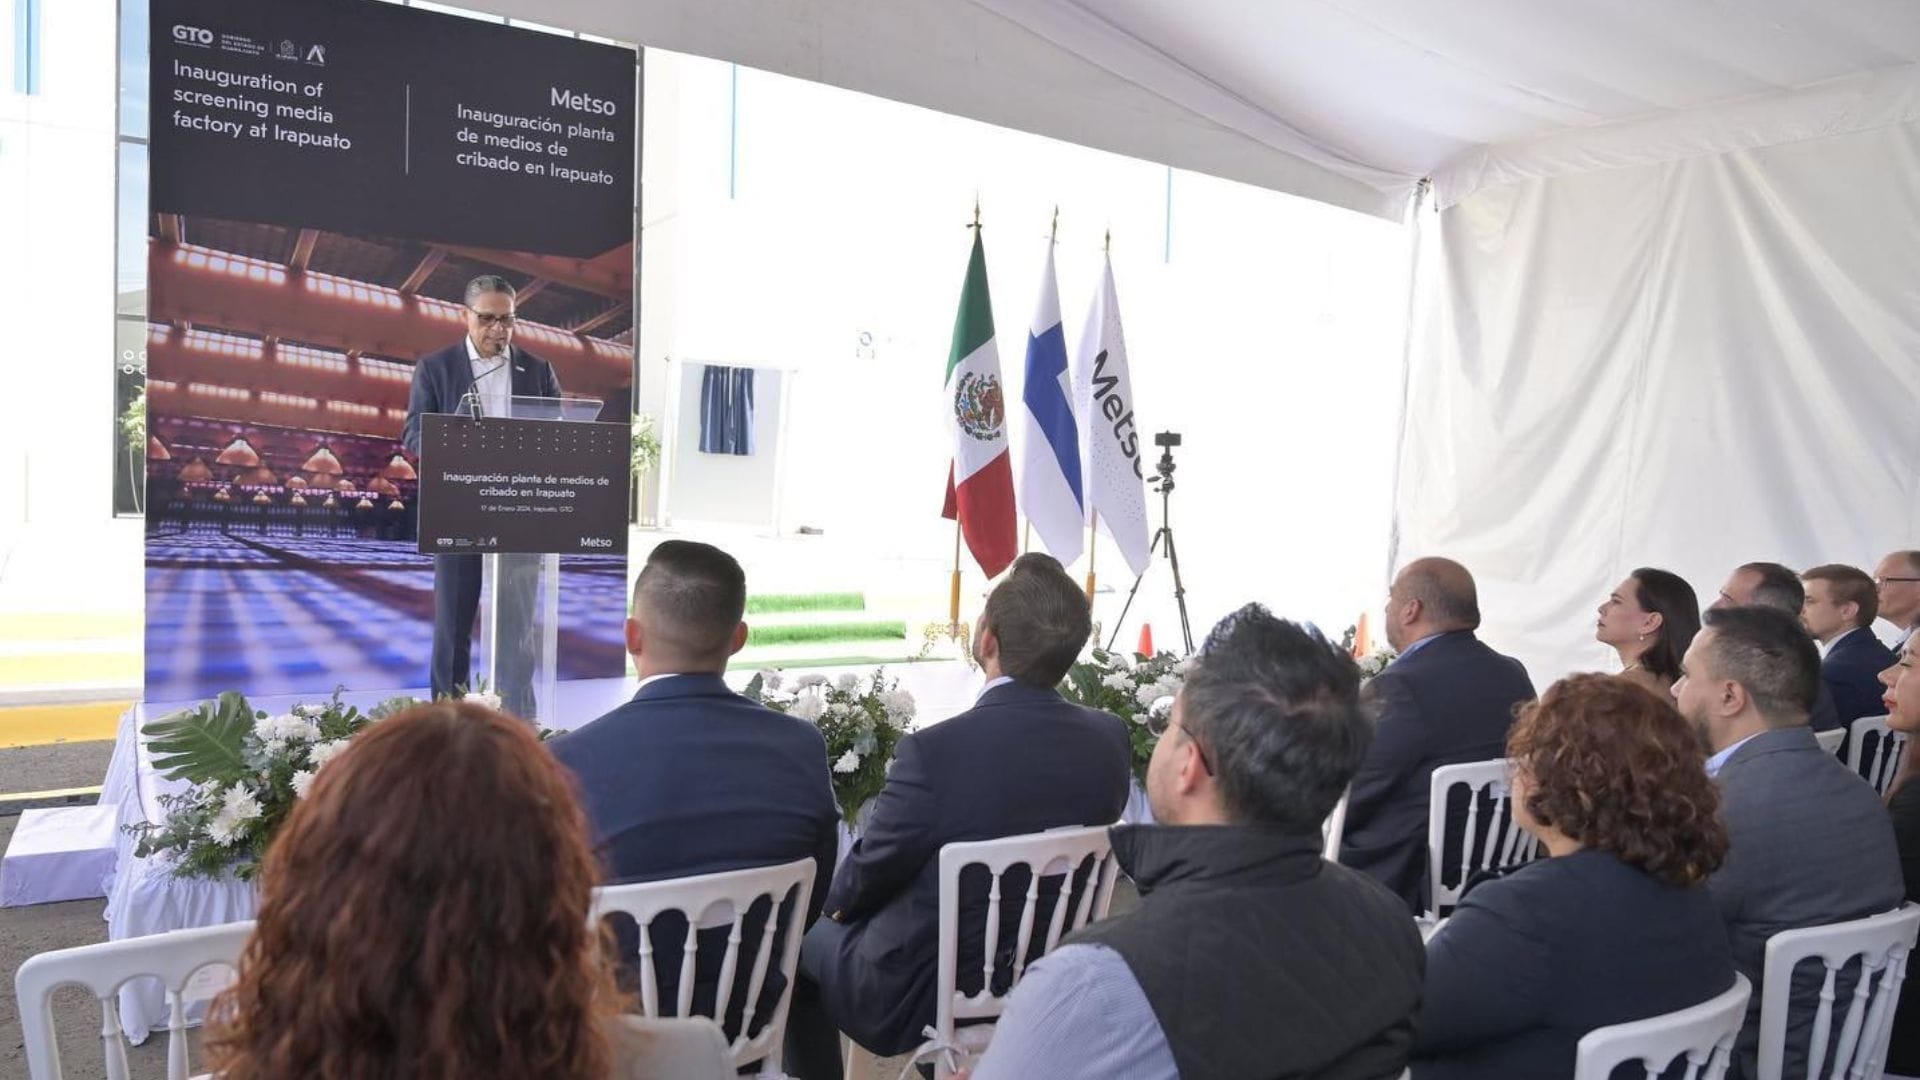 Metso inaugura planta de medios de cribado en Irapuato, México